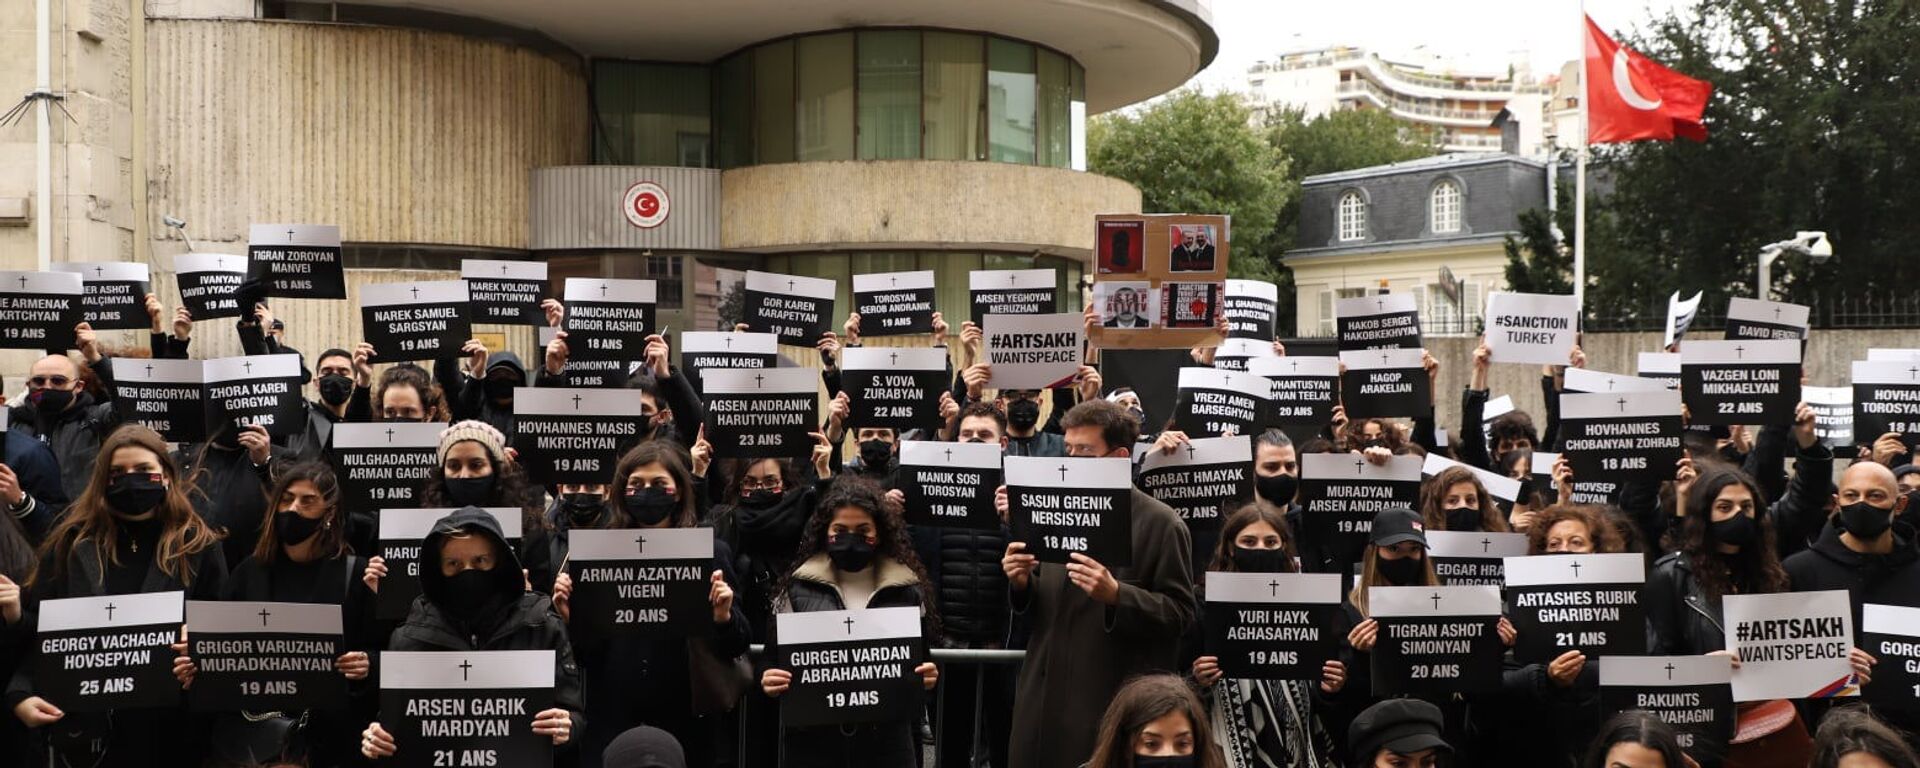 Армяне провели акцию протеста перед турецким посольством во Франции (25 октября 2020). Париж - Sputnik Армения, 1920, 25.10.2020